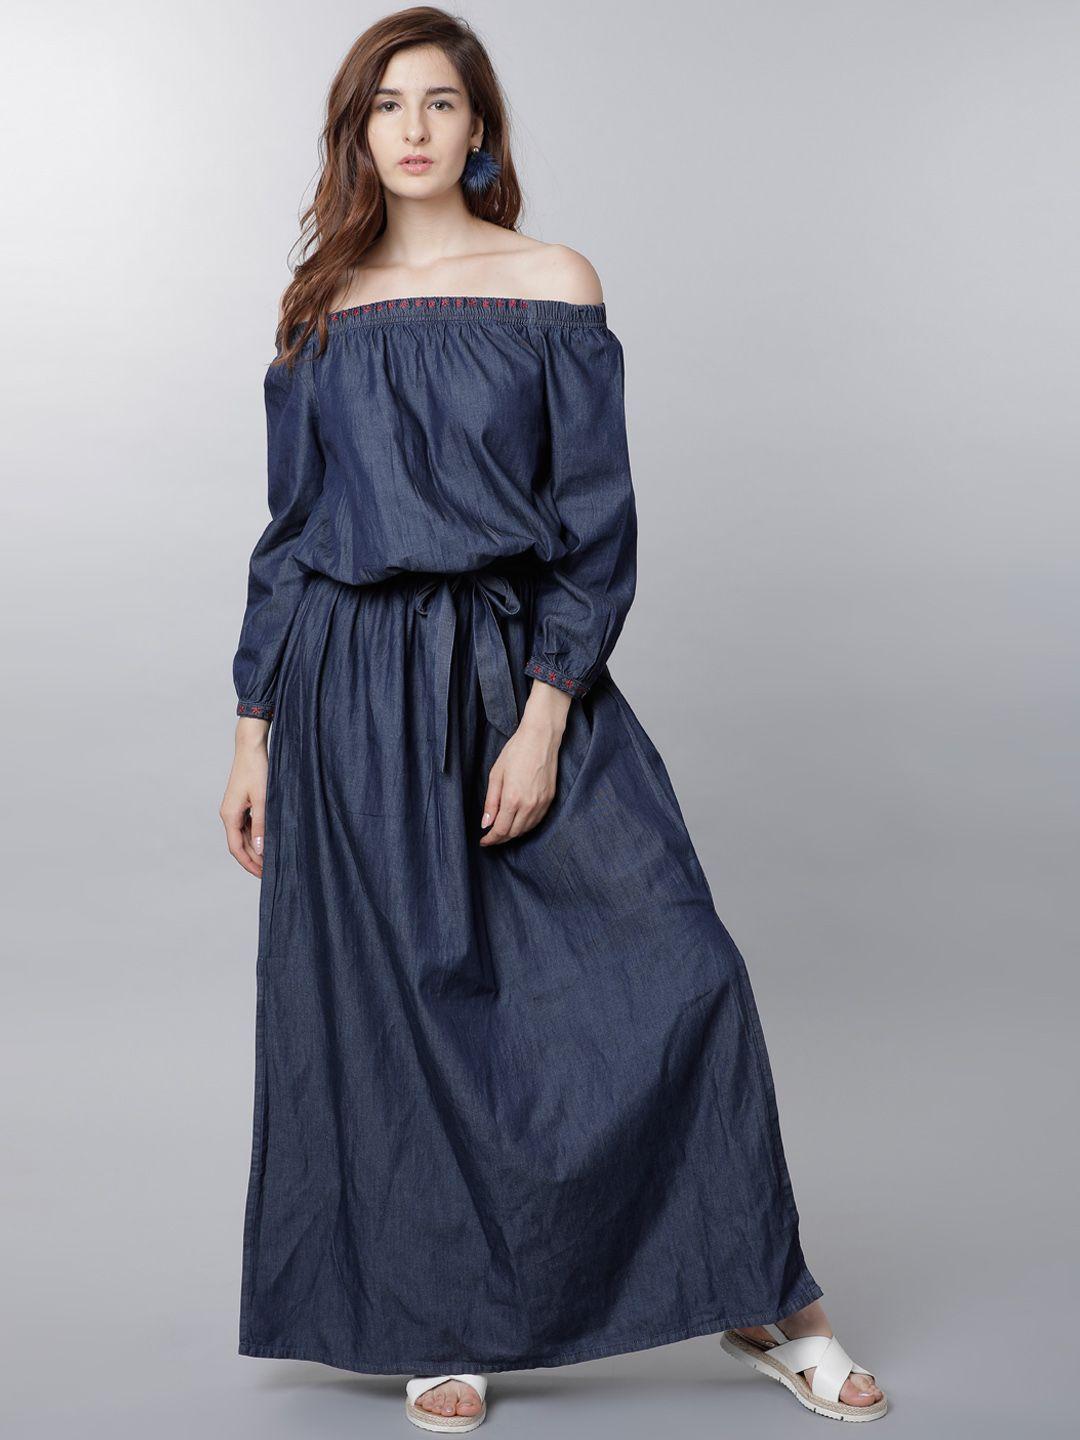 tokyo talkies women navy blue solid blouson dress